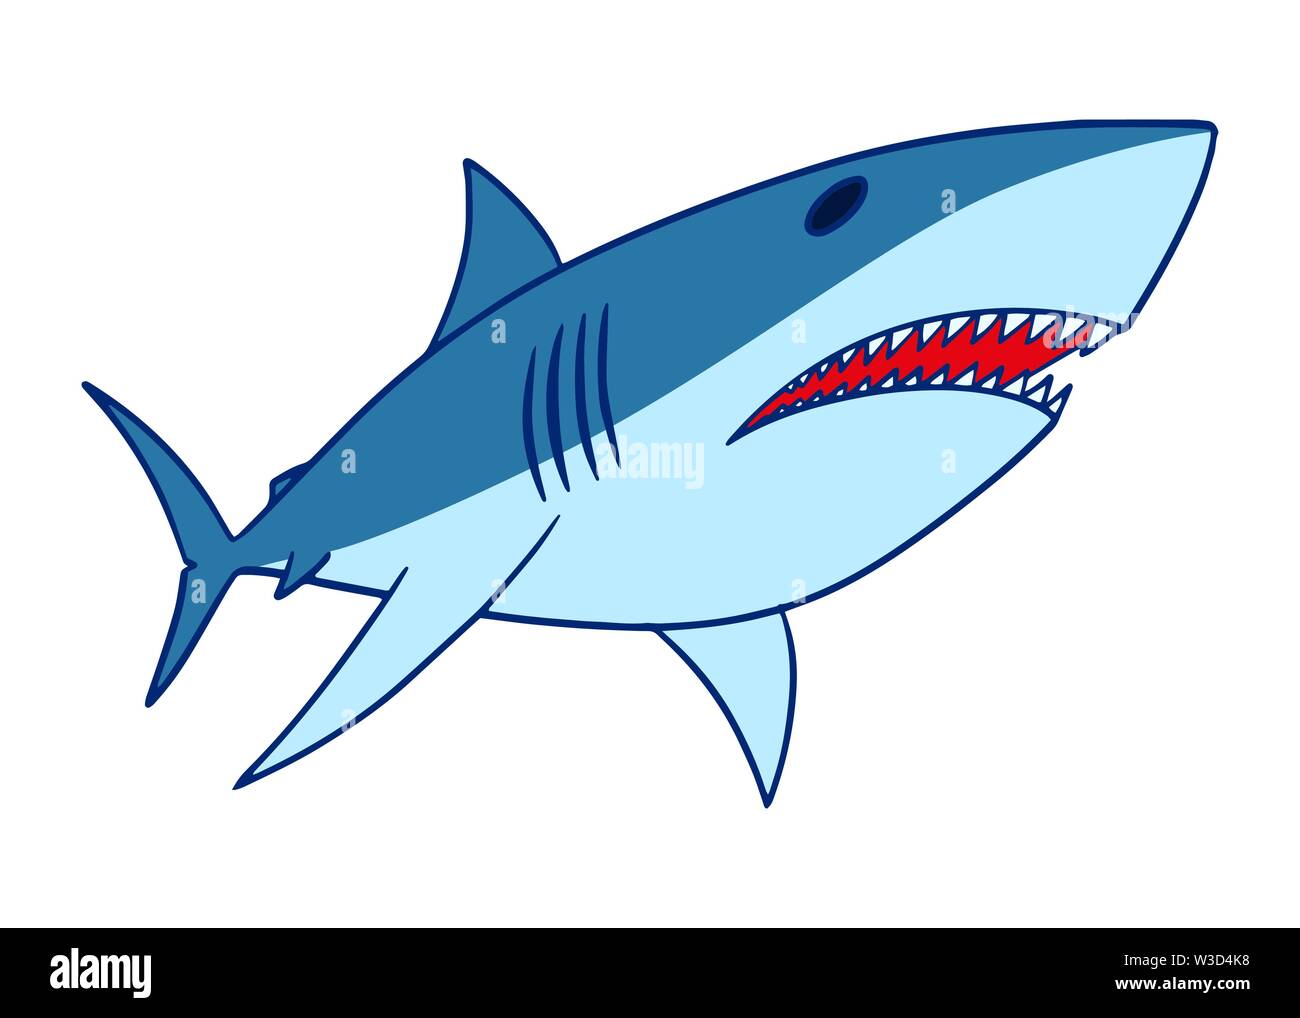 Shark vector illustration. Isolated shark swimming clip art on white ...